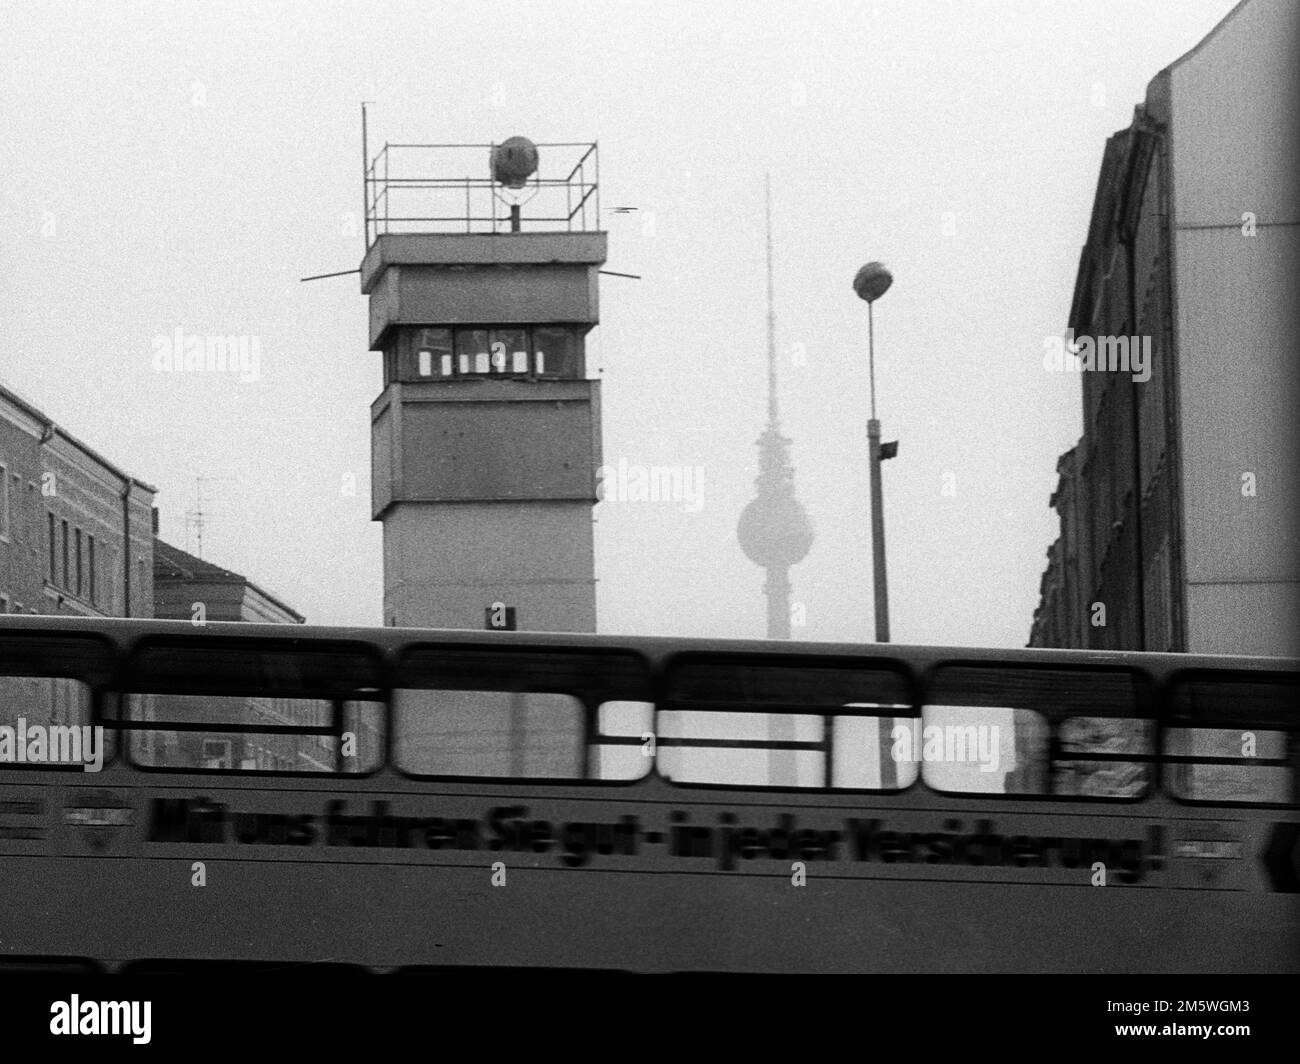 GDR, Berlino, 04. 02. 1990, Muro su Bernauer Strasse, torre di guardia e autobus, torre della televisione, Strelitzer Strasse, C Rolf Zoellner Foto Stock